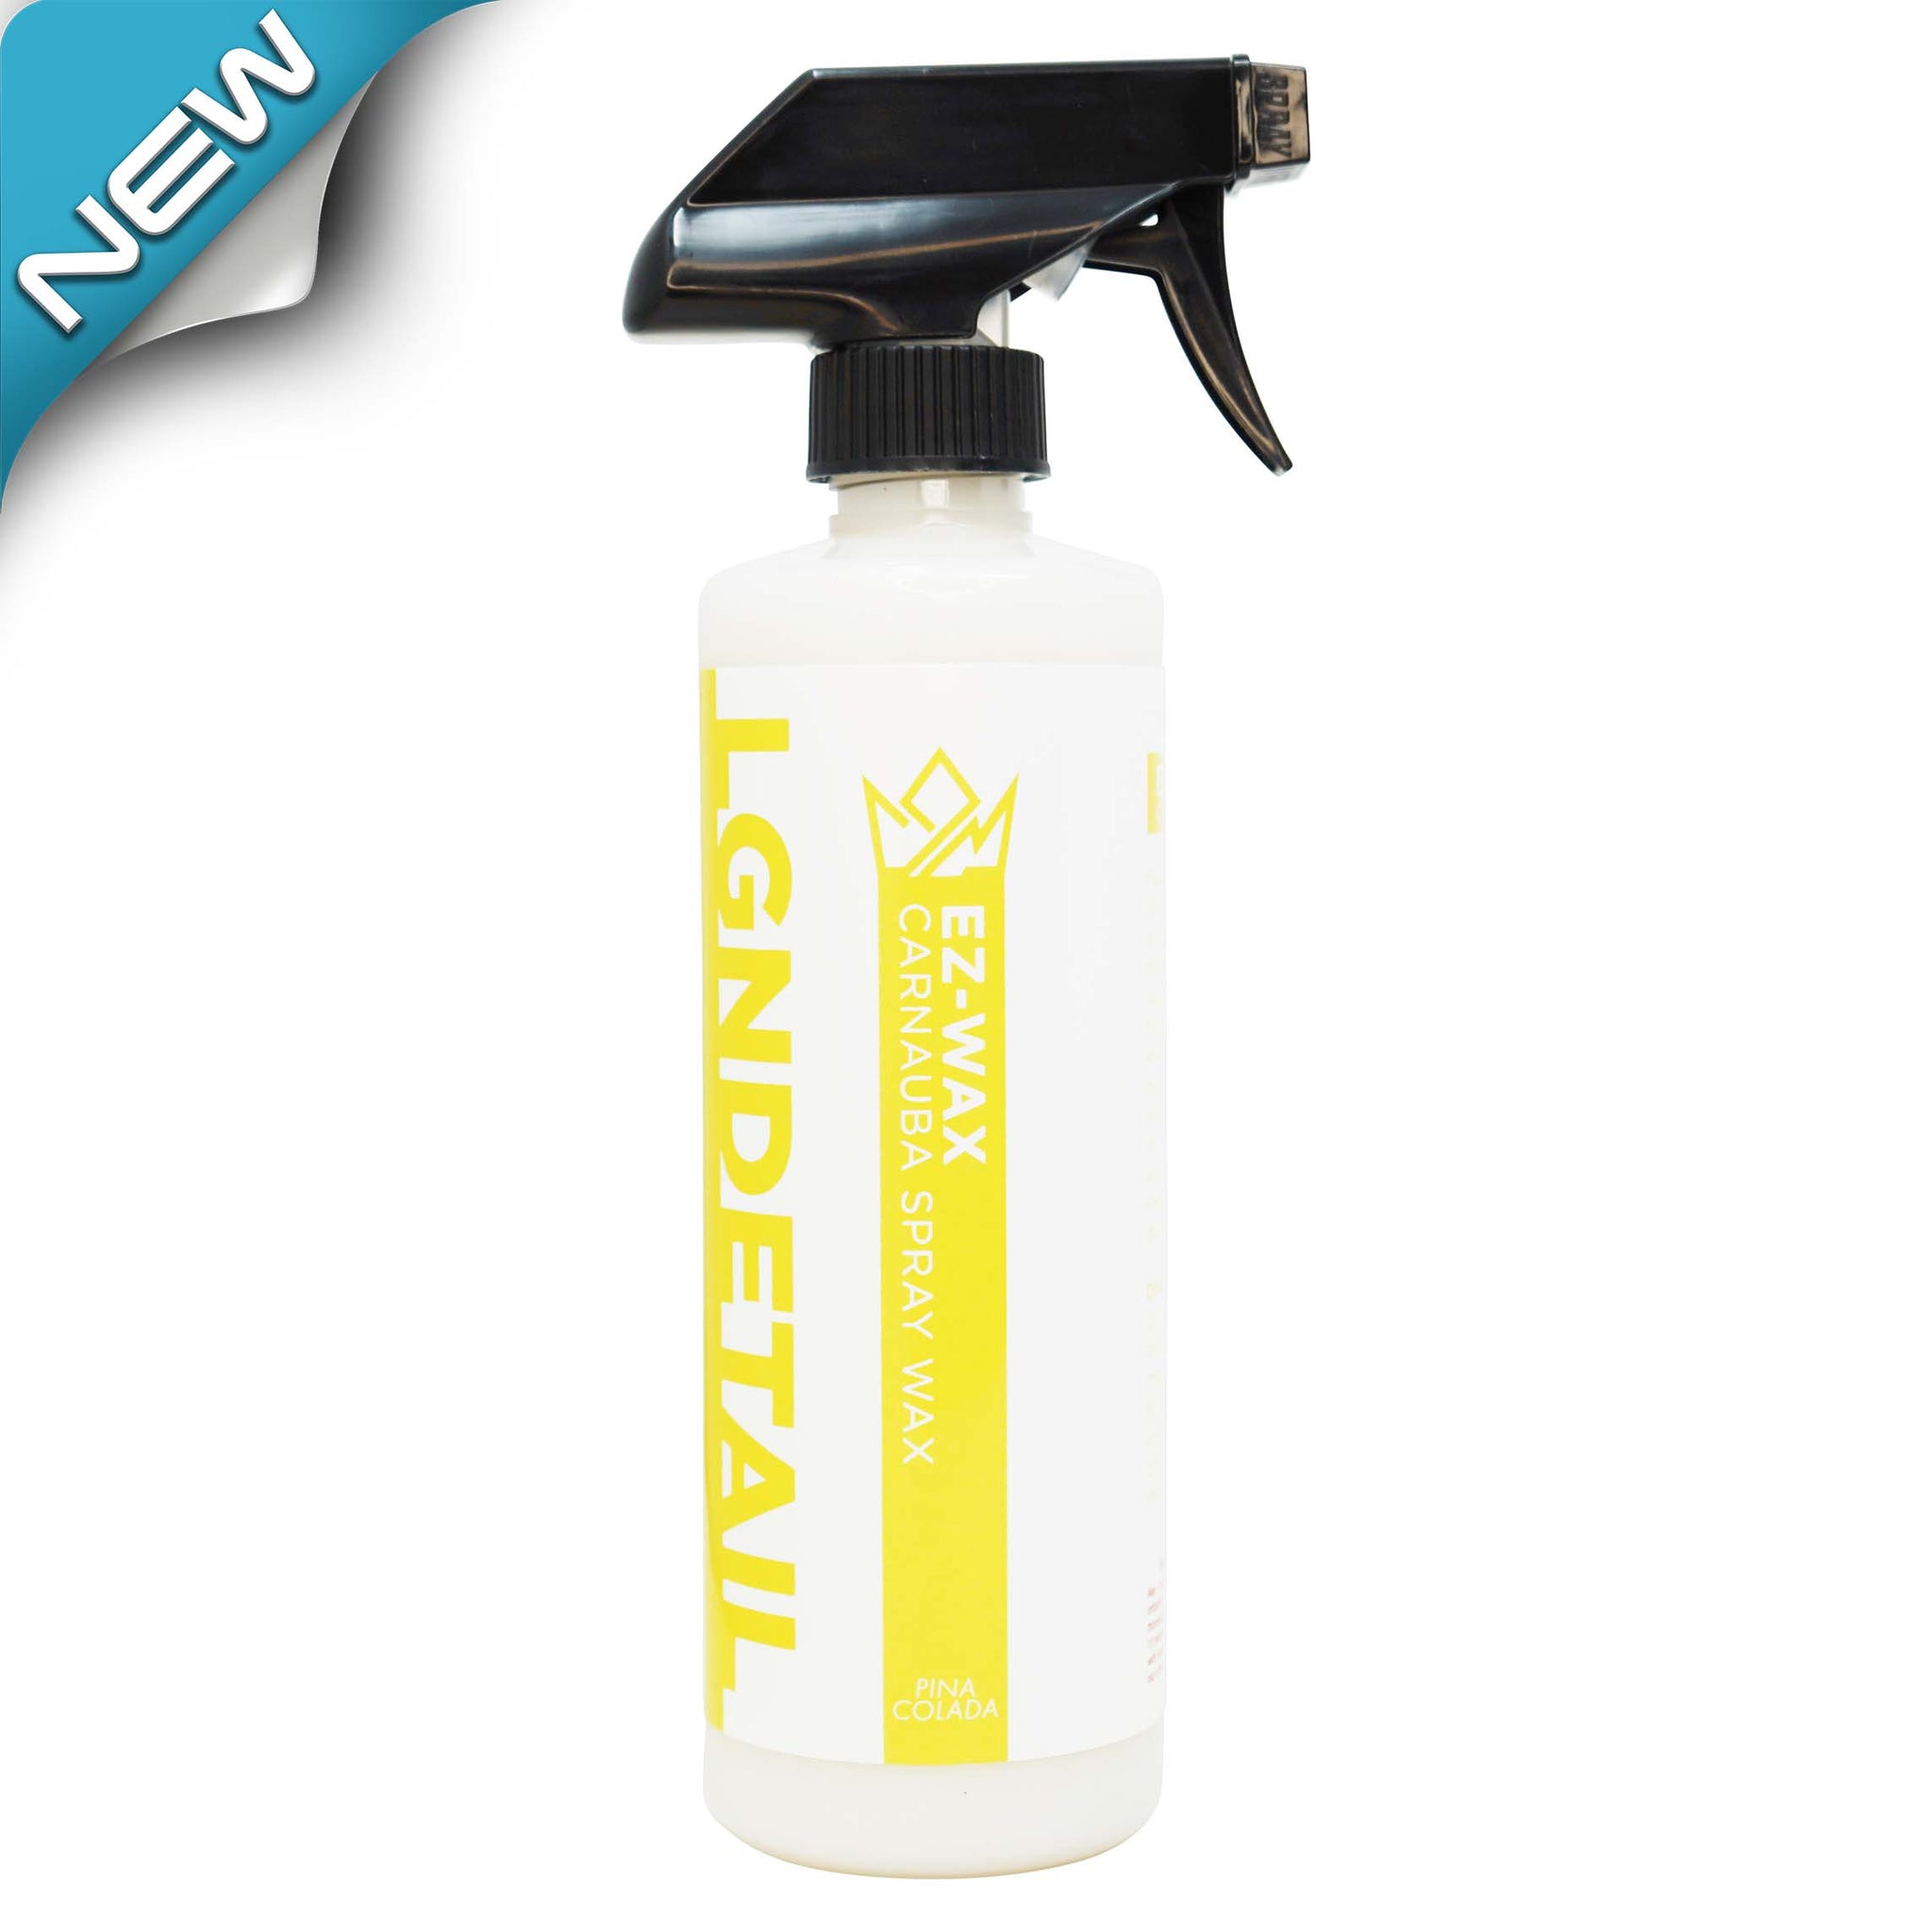 EZ-WAX Carnauba Spray Wax